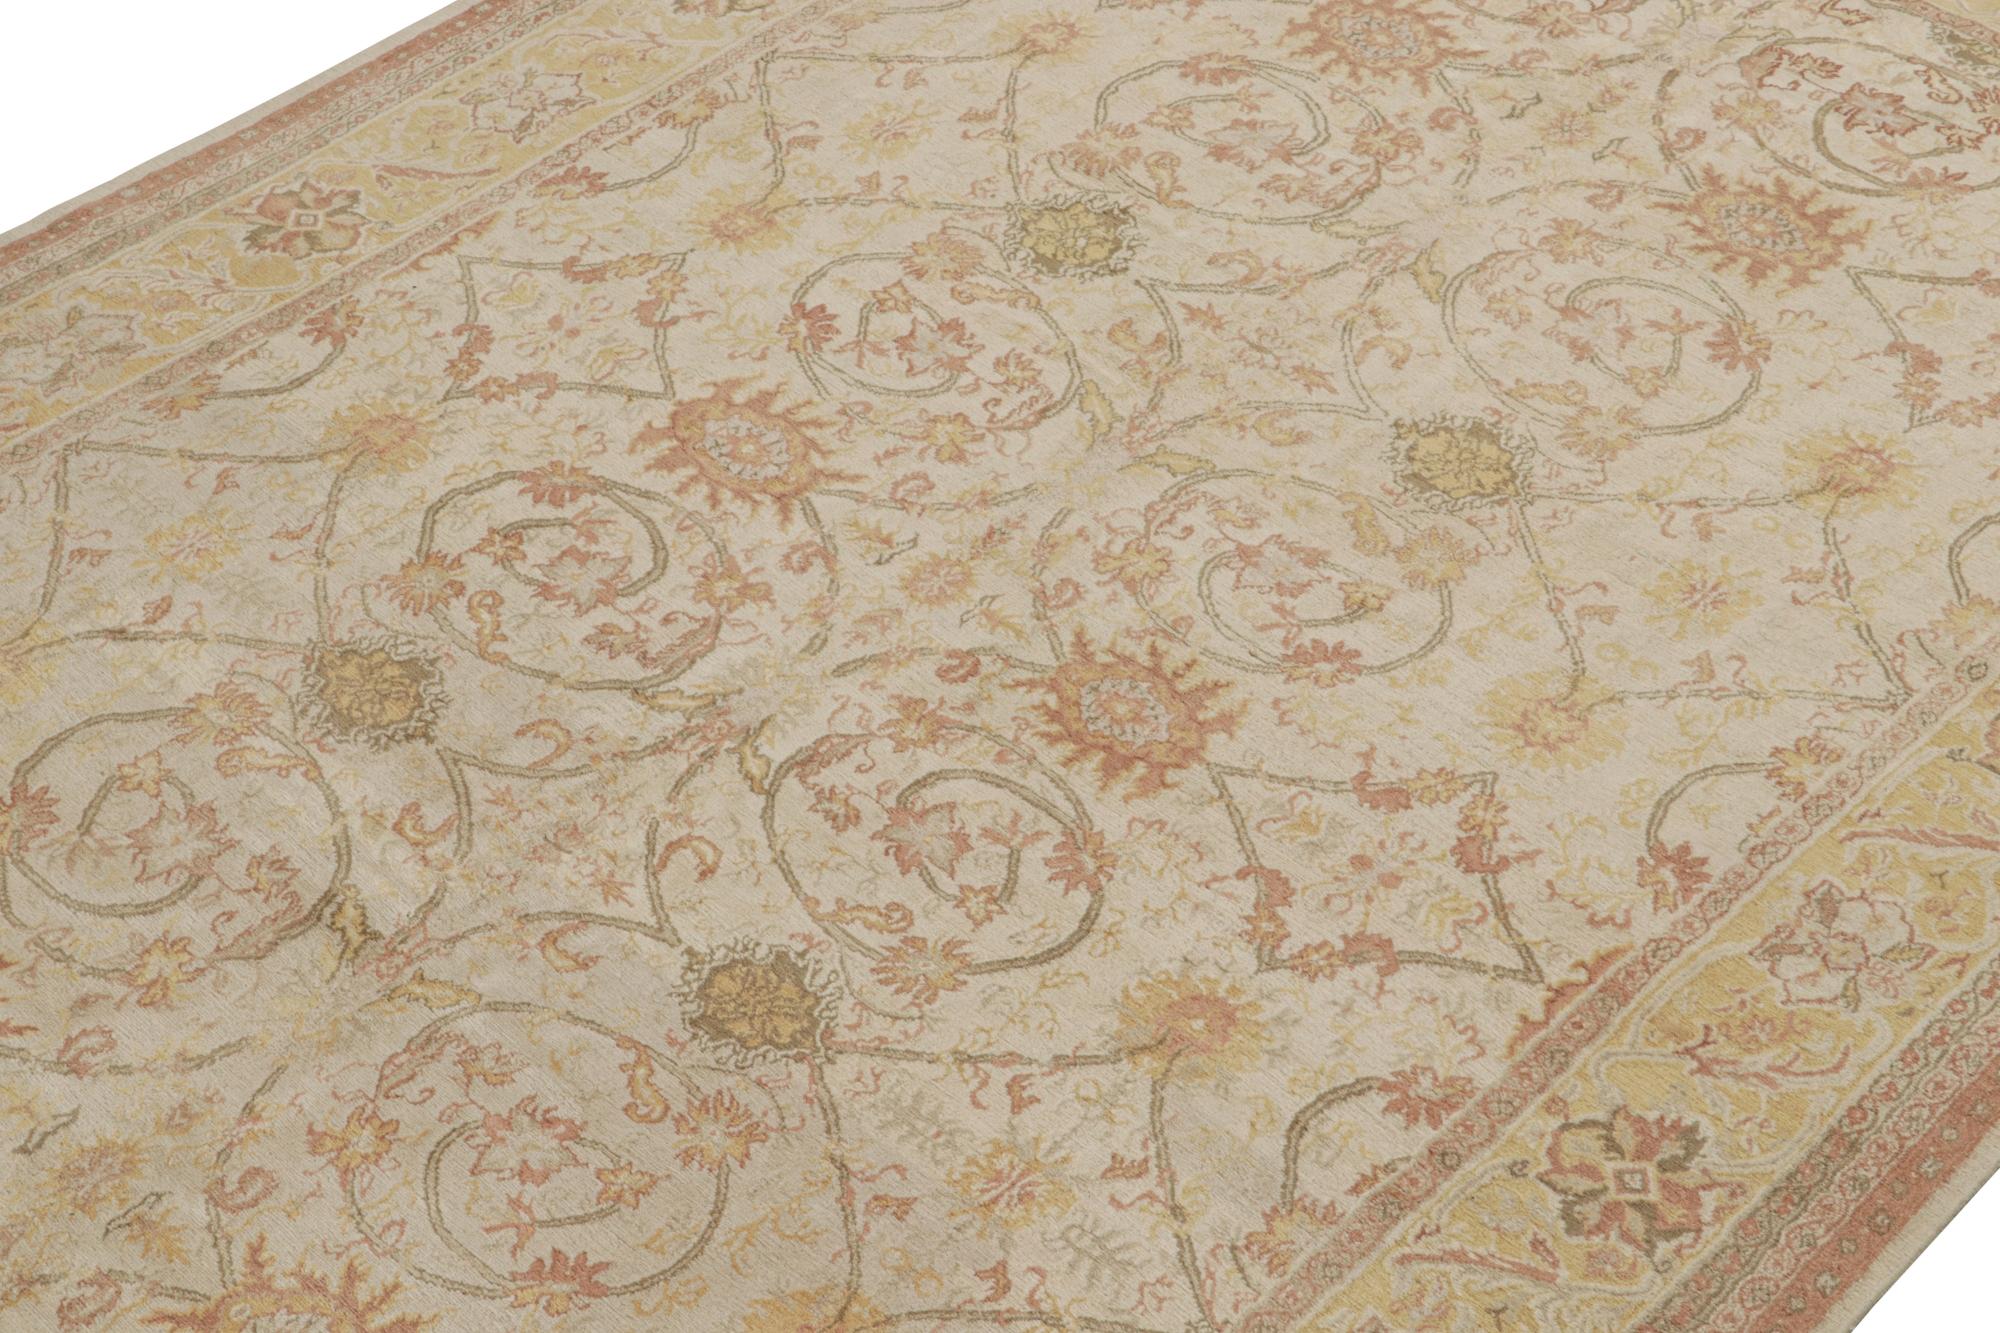 Ce tapis 9x13 est une nouveauté de la Collection Modern Classics de Rug & Kilim, une pièce contemporaine inspirée des tapis orientaux anciens.

Plus loin dans le Design :

Noué à la main en laine, ce tapis s'inspire des tapis persans Sultanabad de